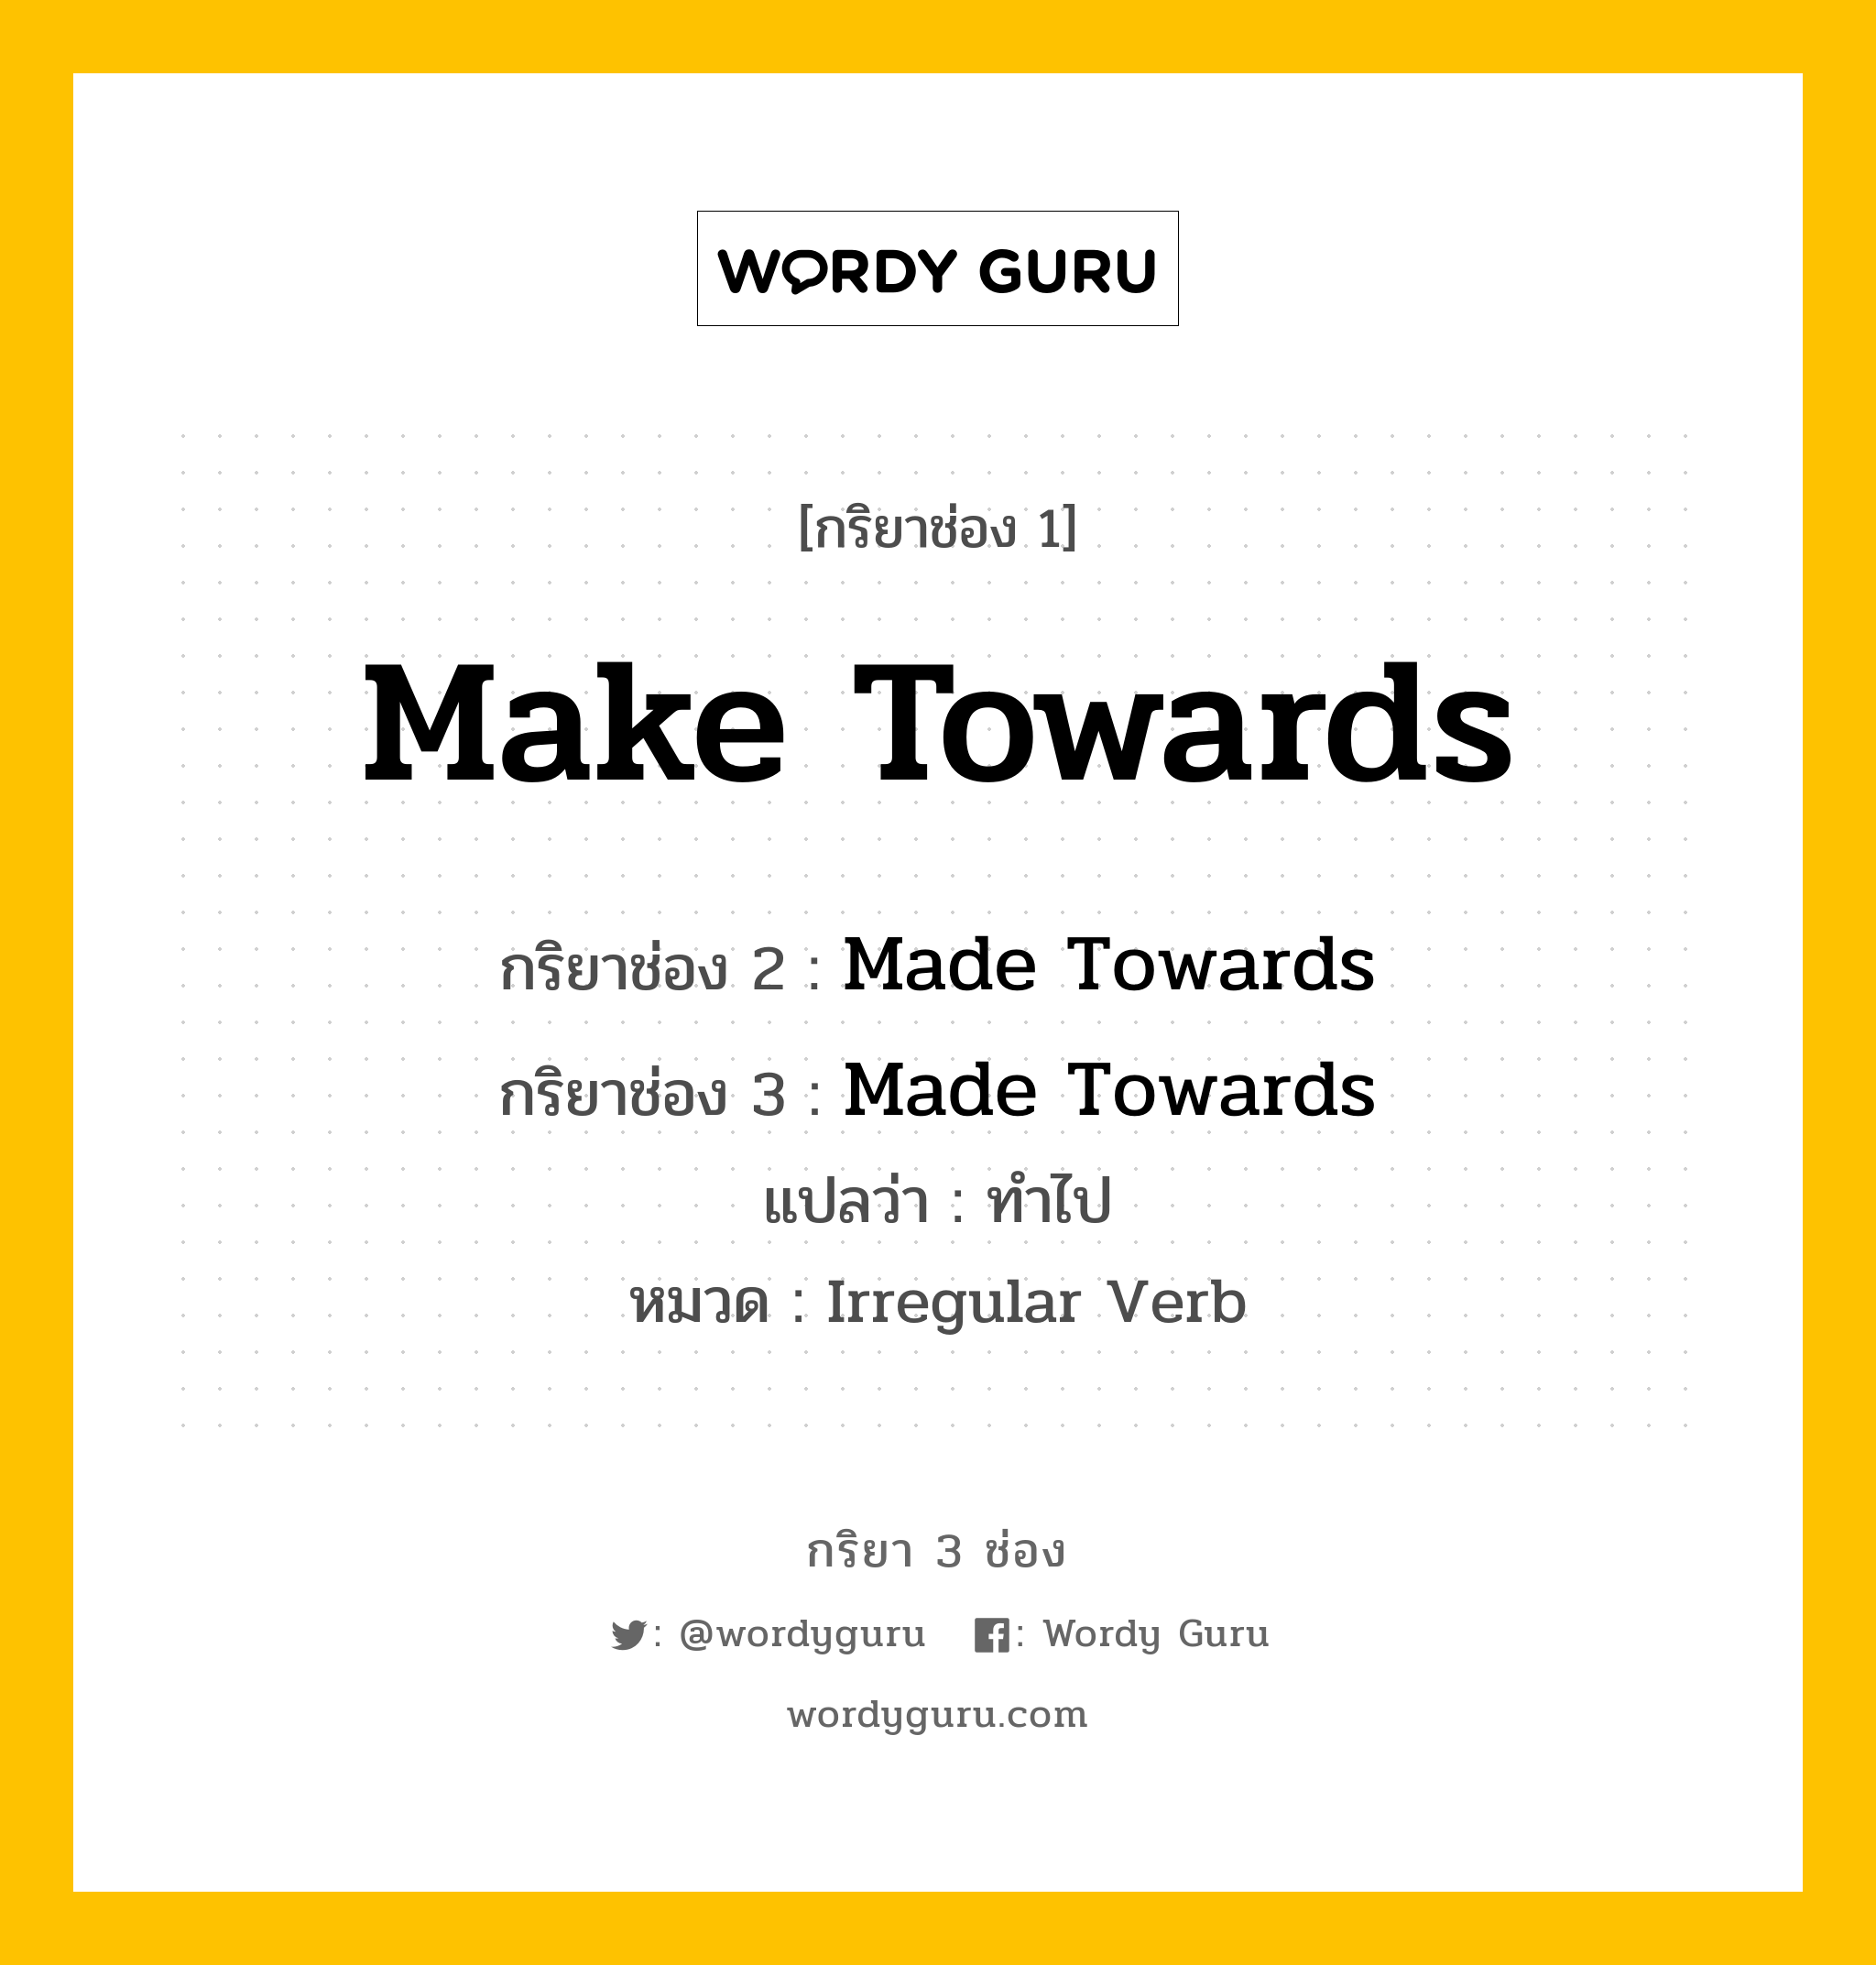 กริยา 3 ช่อง ของ Make Towards คืออะไร?, กริยาช่อง 1 Make Towards กริยาช่อง 2 Made Towards กริยาช่อง 3 Made Towards แปลว่า ทำไป หมวด Irregular Verb หมวด Irregular Verb